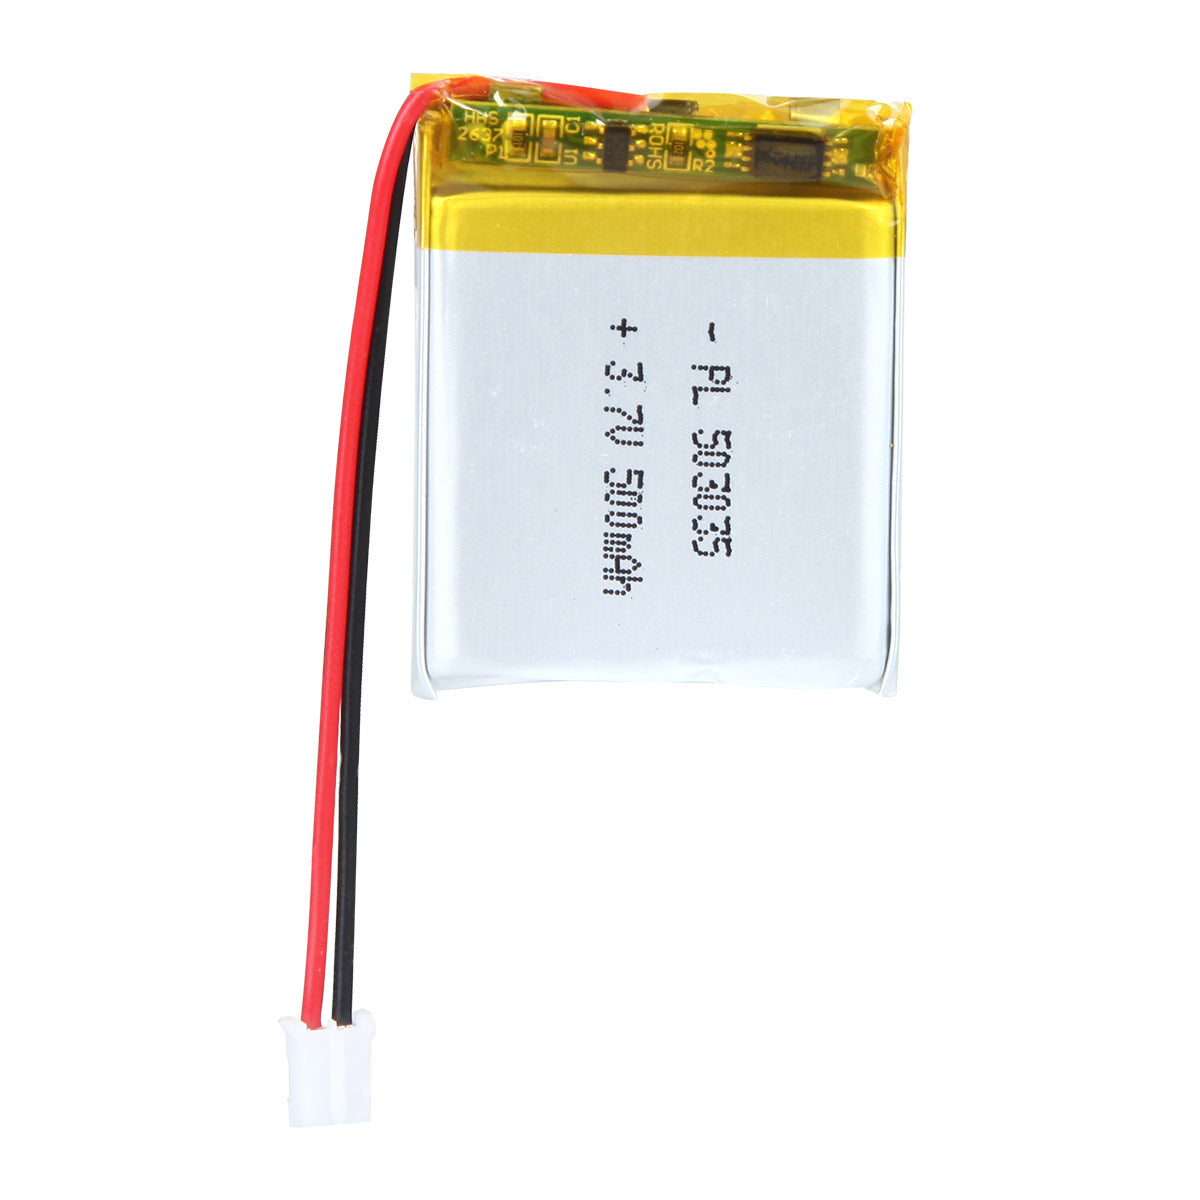 Batterie Lipo 500mAh / 3.7V - 602535